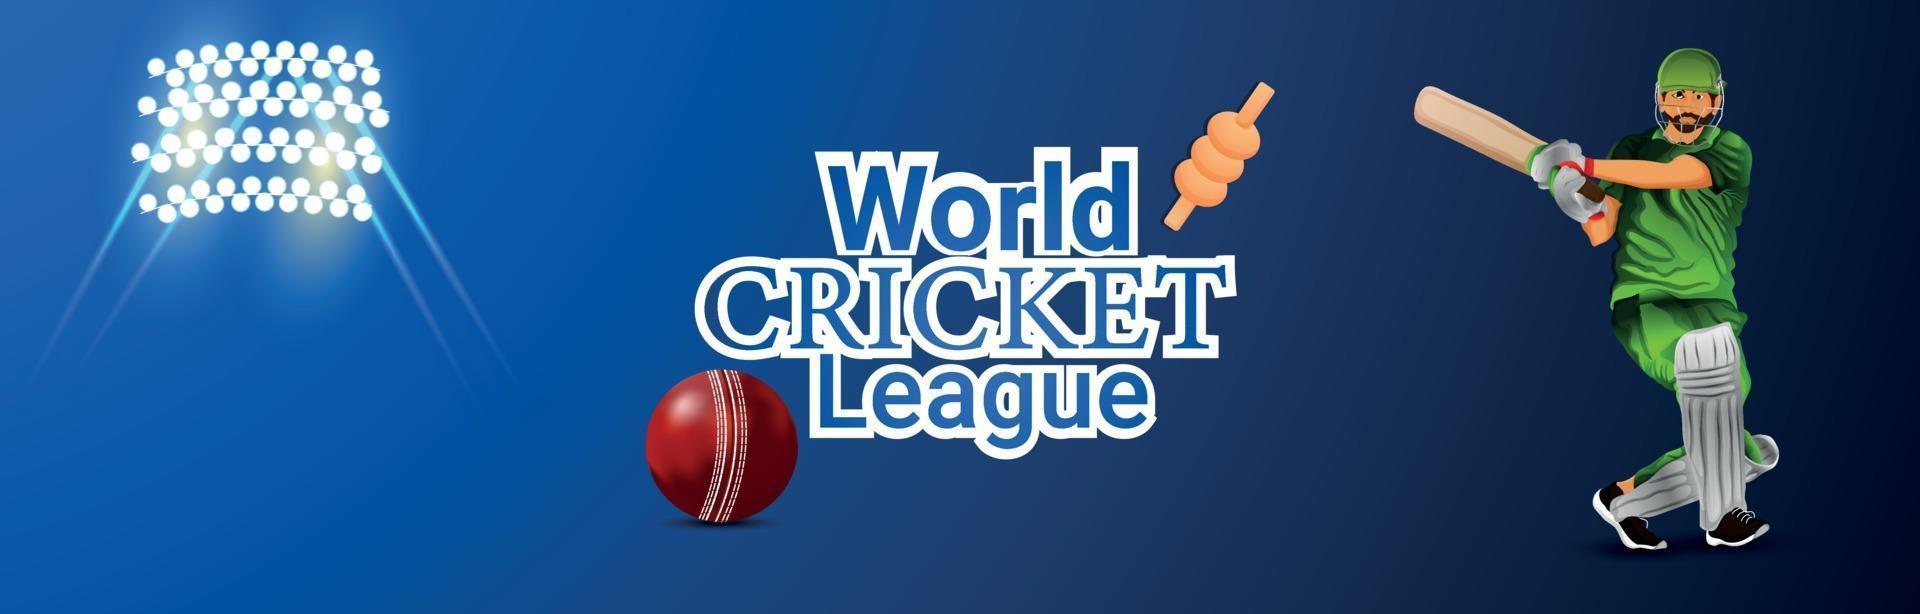 Welt-Cricket-Ligaspiel mit Vektorillustration des Cricketspielers auf Stadionhintergrund vektor